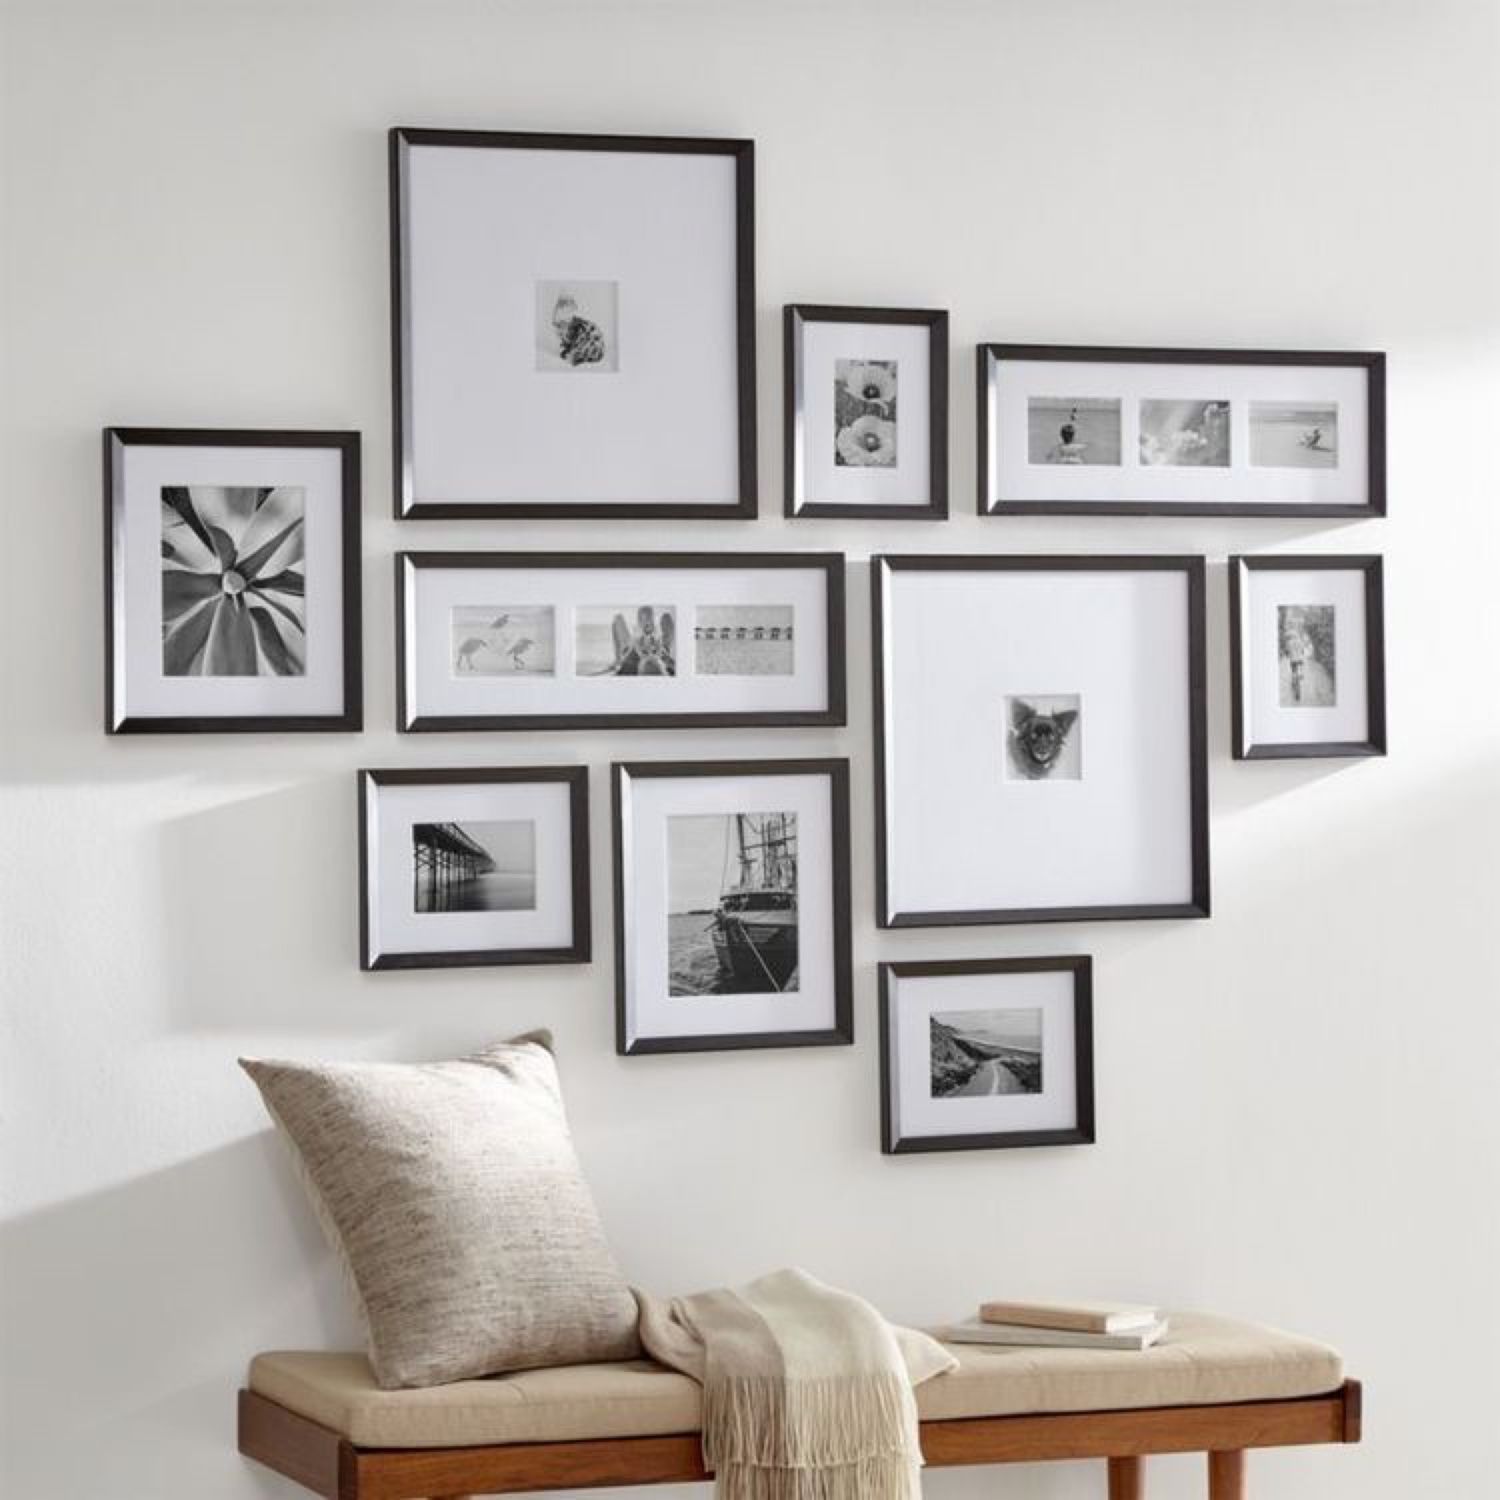 Как красиво повесить фотографии на стену в рамках одного размера